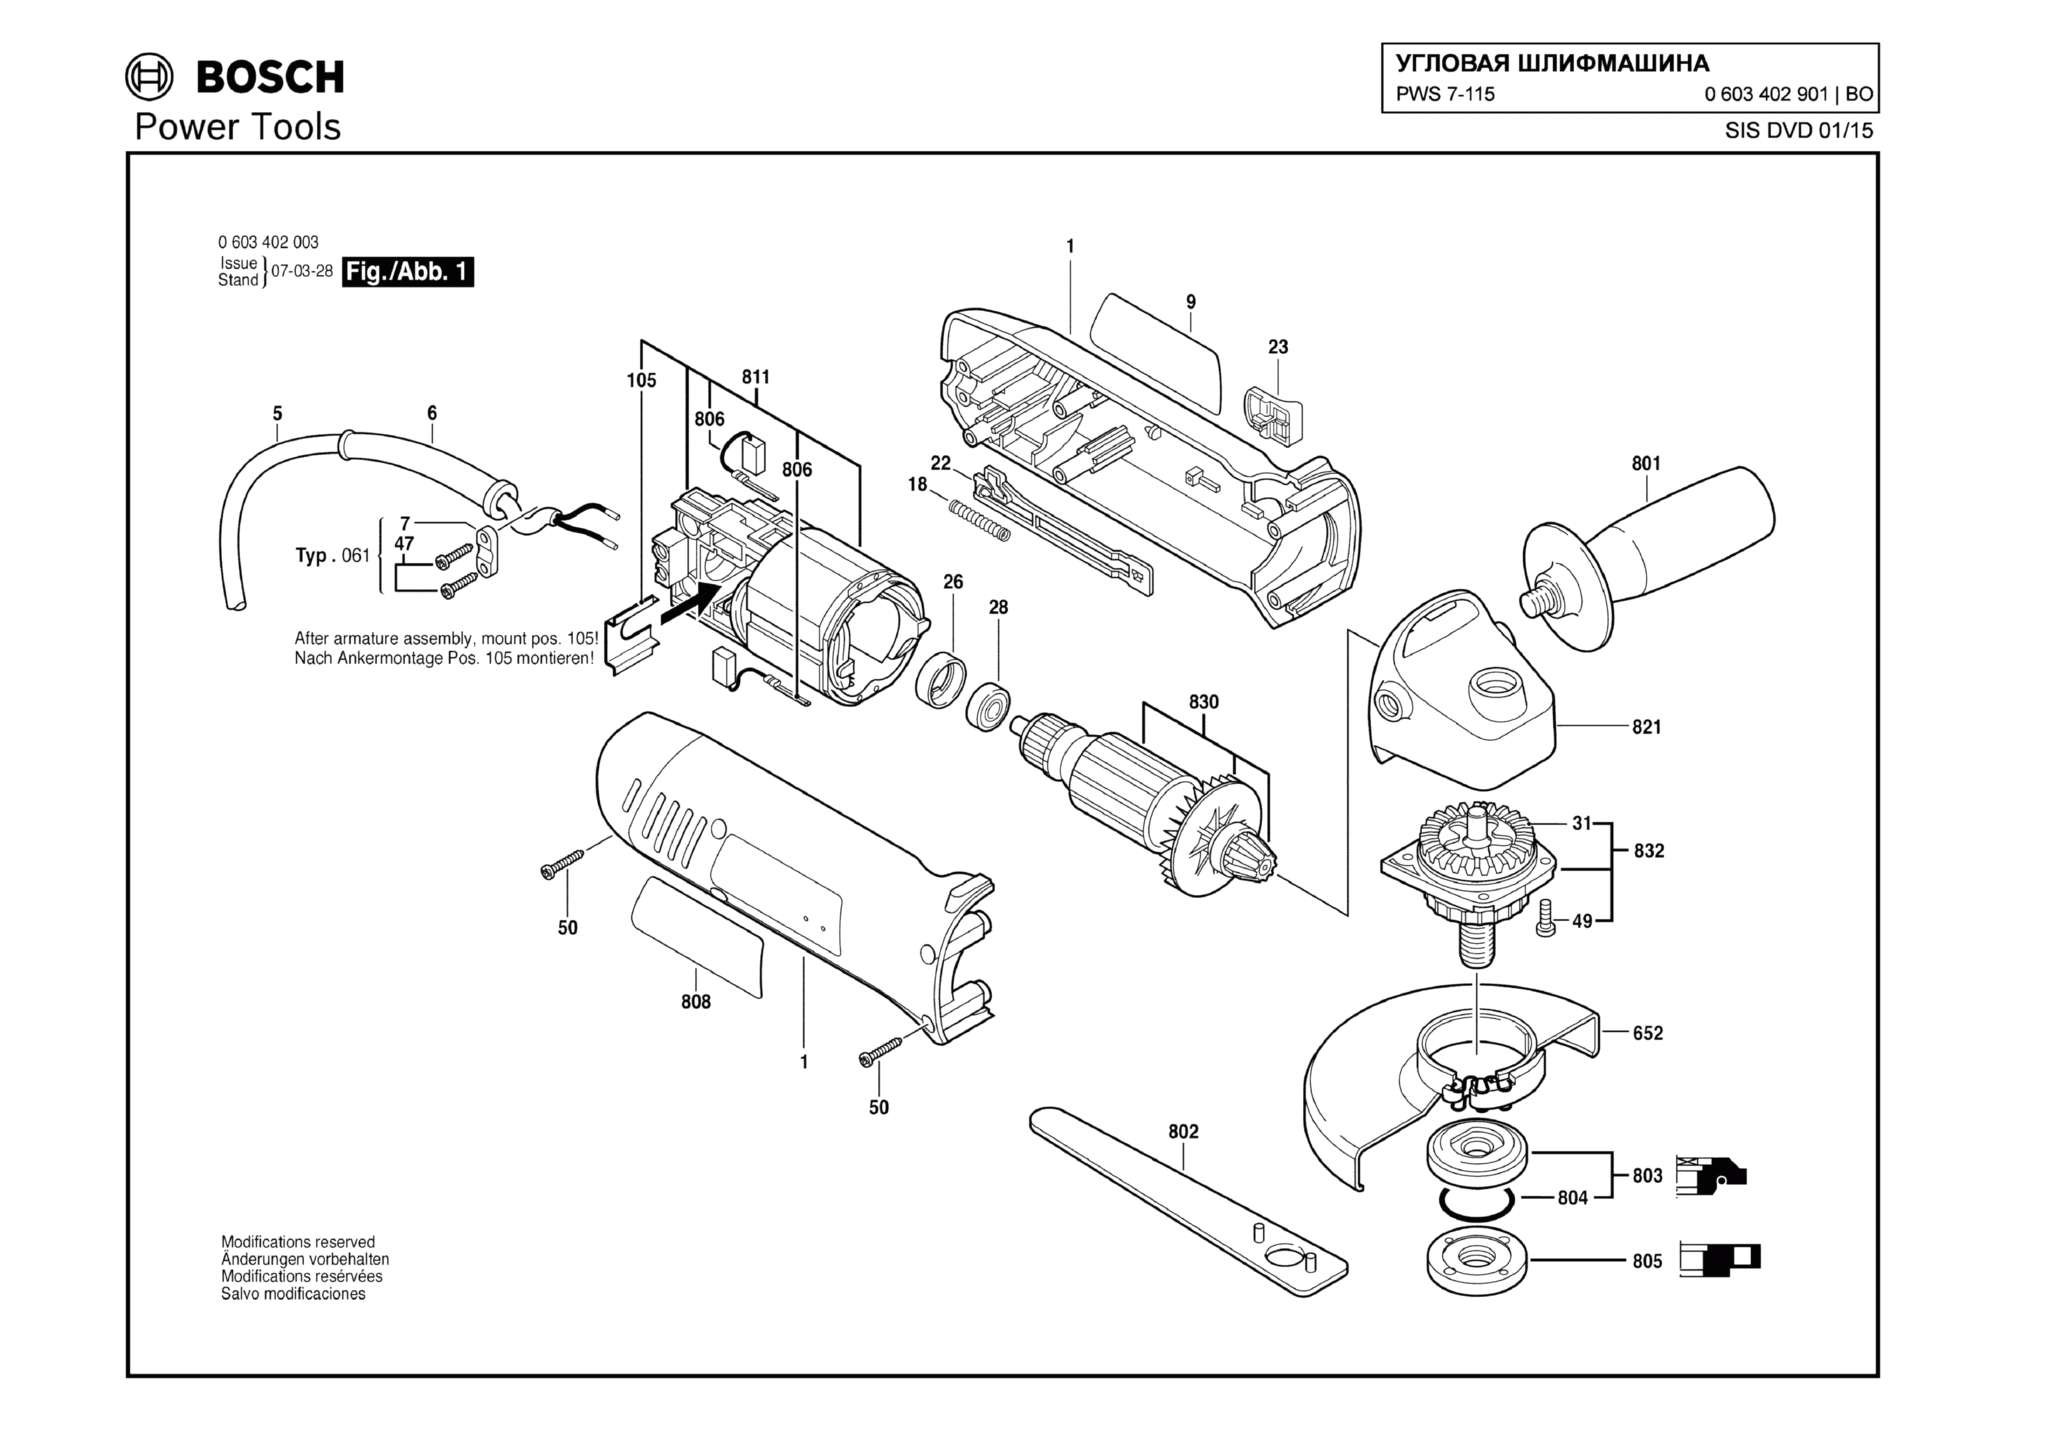 Запчасти, схема и деталировка Bosch PWS 7-115 (ТИП 0603402901)